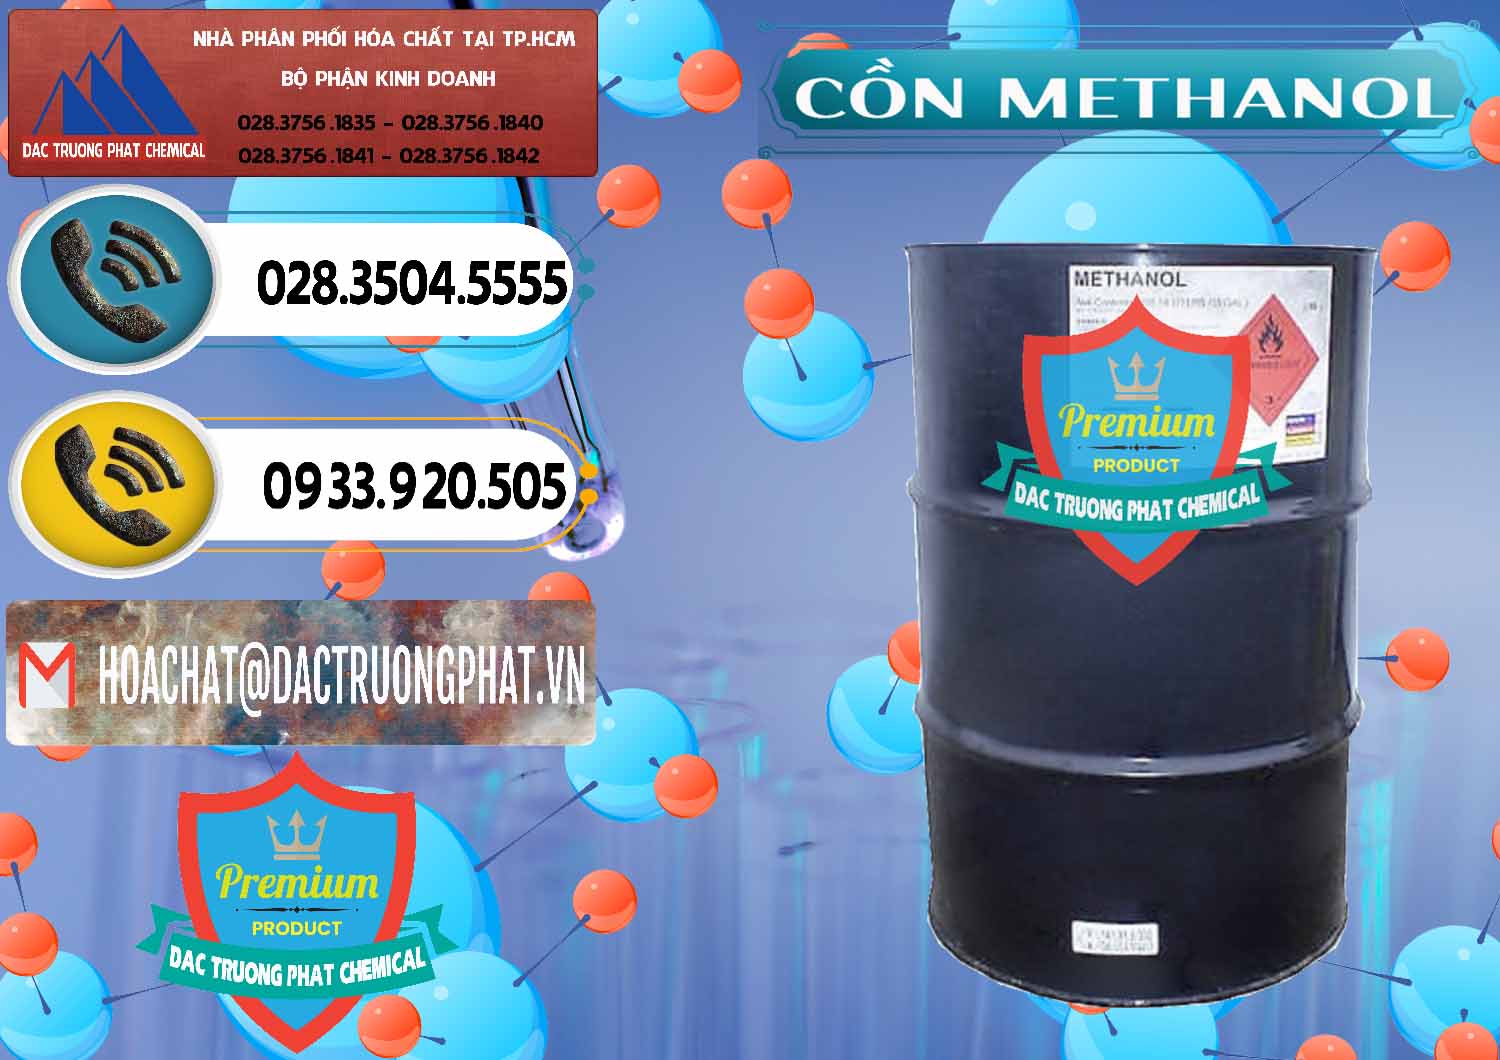 Cty chuyên kinh doanh ( bán ) Cồn Methanol - Methyl Alcohol Mã Lai Malaysia - 0331 - Nơi phân phối - kinh doanh hóa chất tại TP.HCM - hoachatdetnhuom.vn